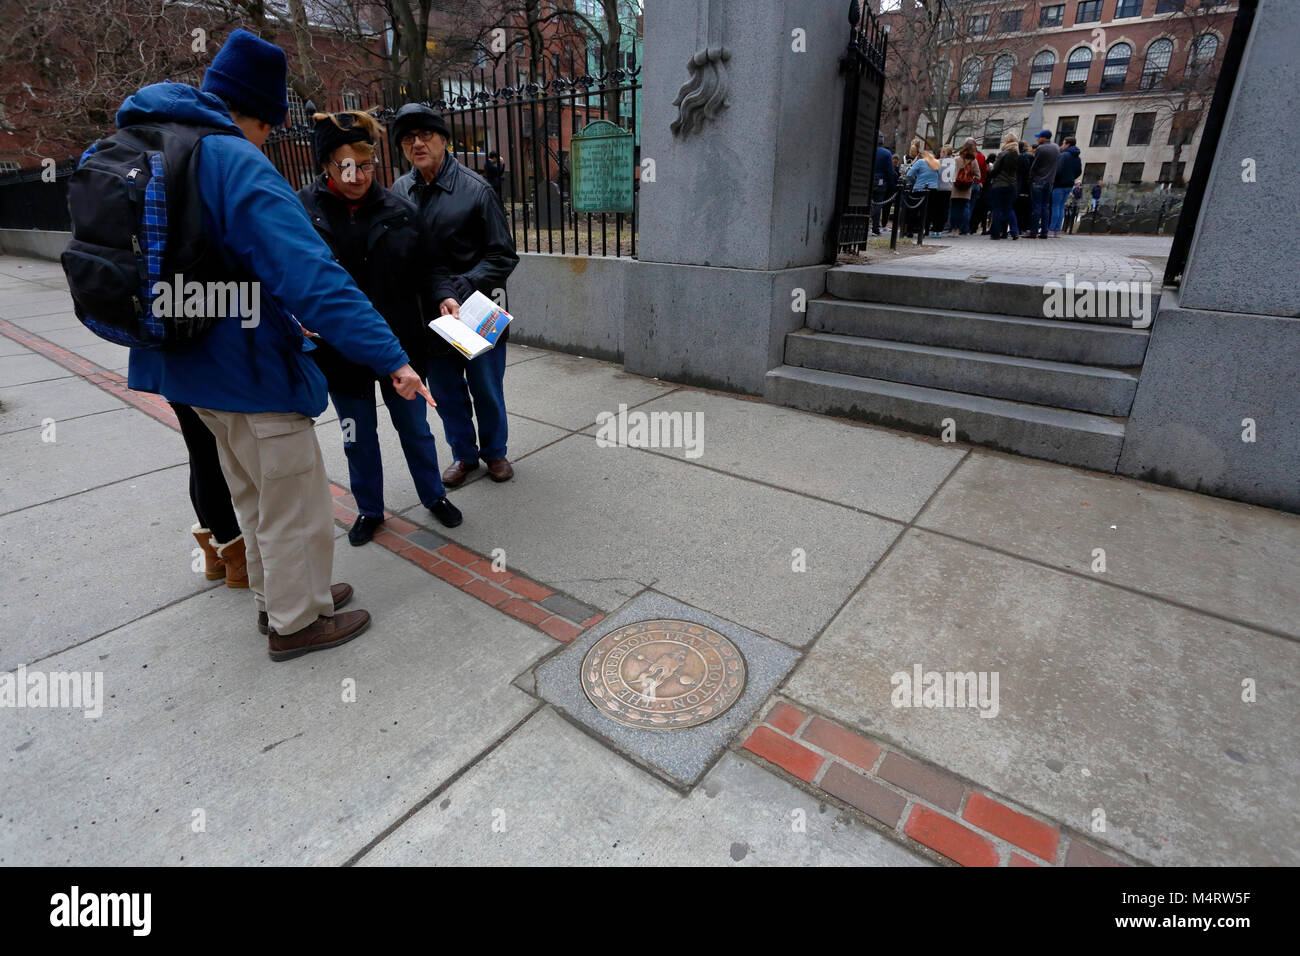 Touristen, die auf eine bronzene Gedenktafel für den Freedom Trail verweisen, die den Ort eines berühmten Wahrzeichen markiert, den Granary Burying Ground, Boston, Massachusetts Stockfoto